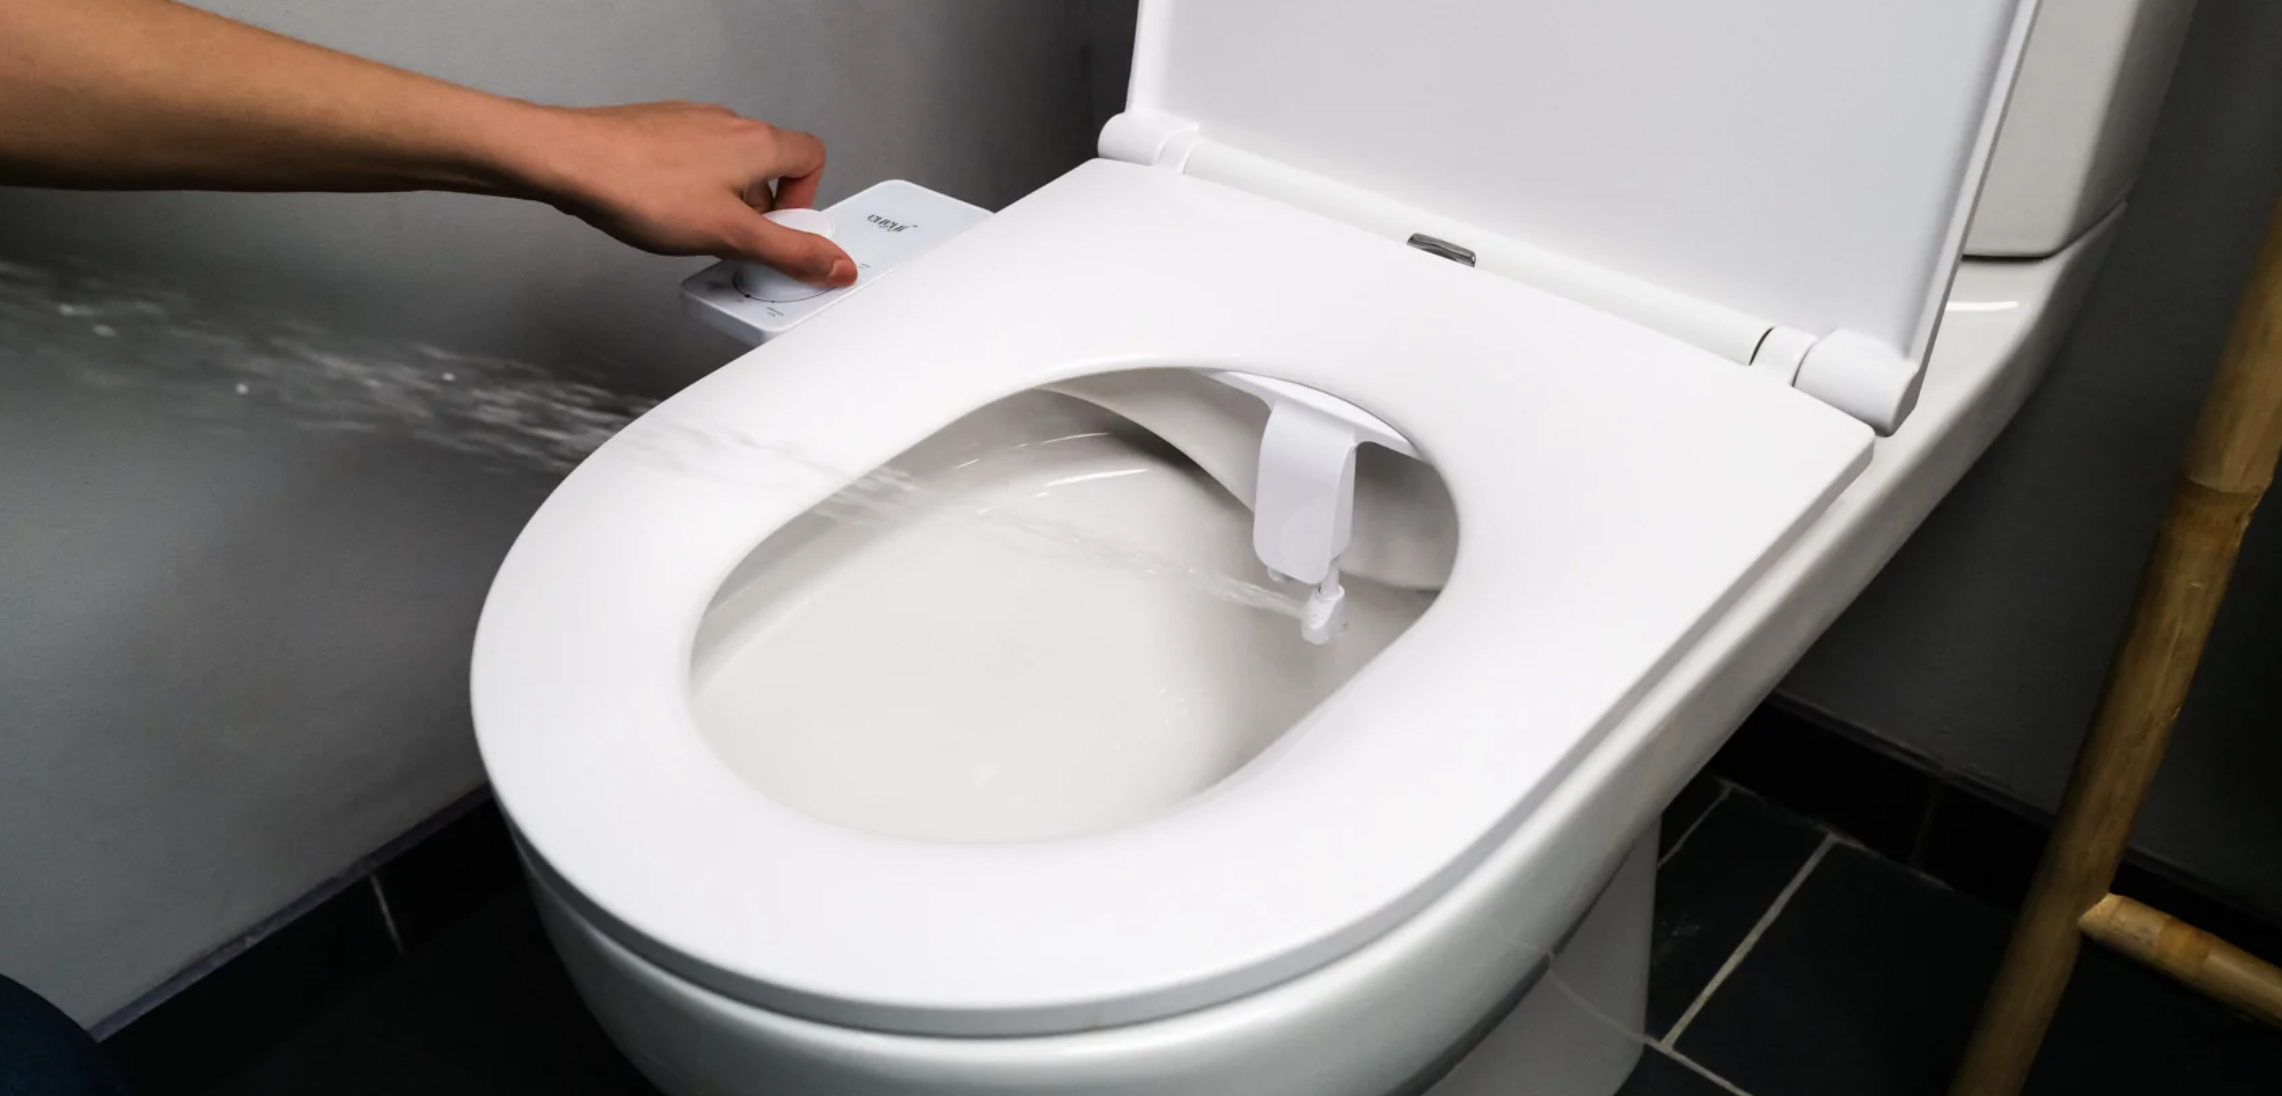 Test toilettes japonaises Boku mini pour faire des économies de